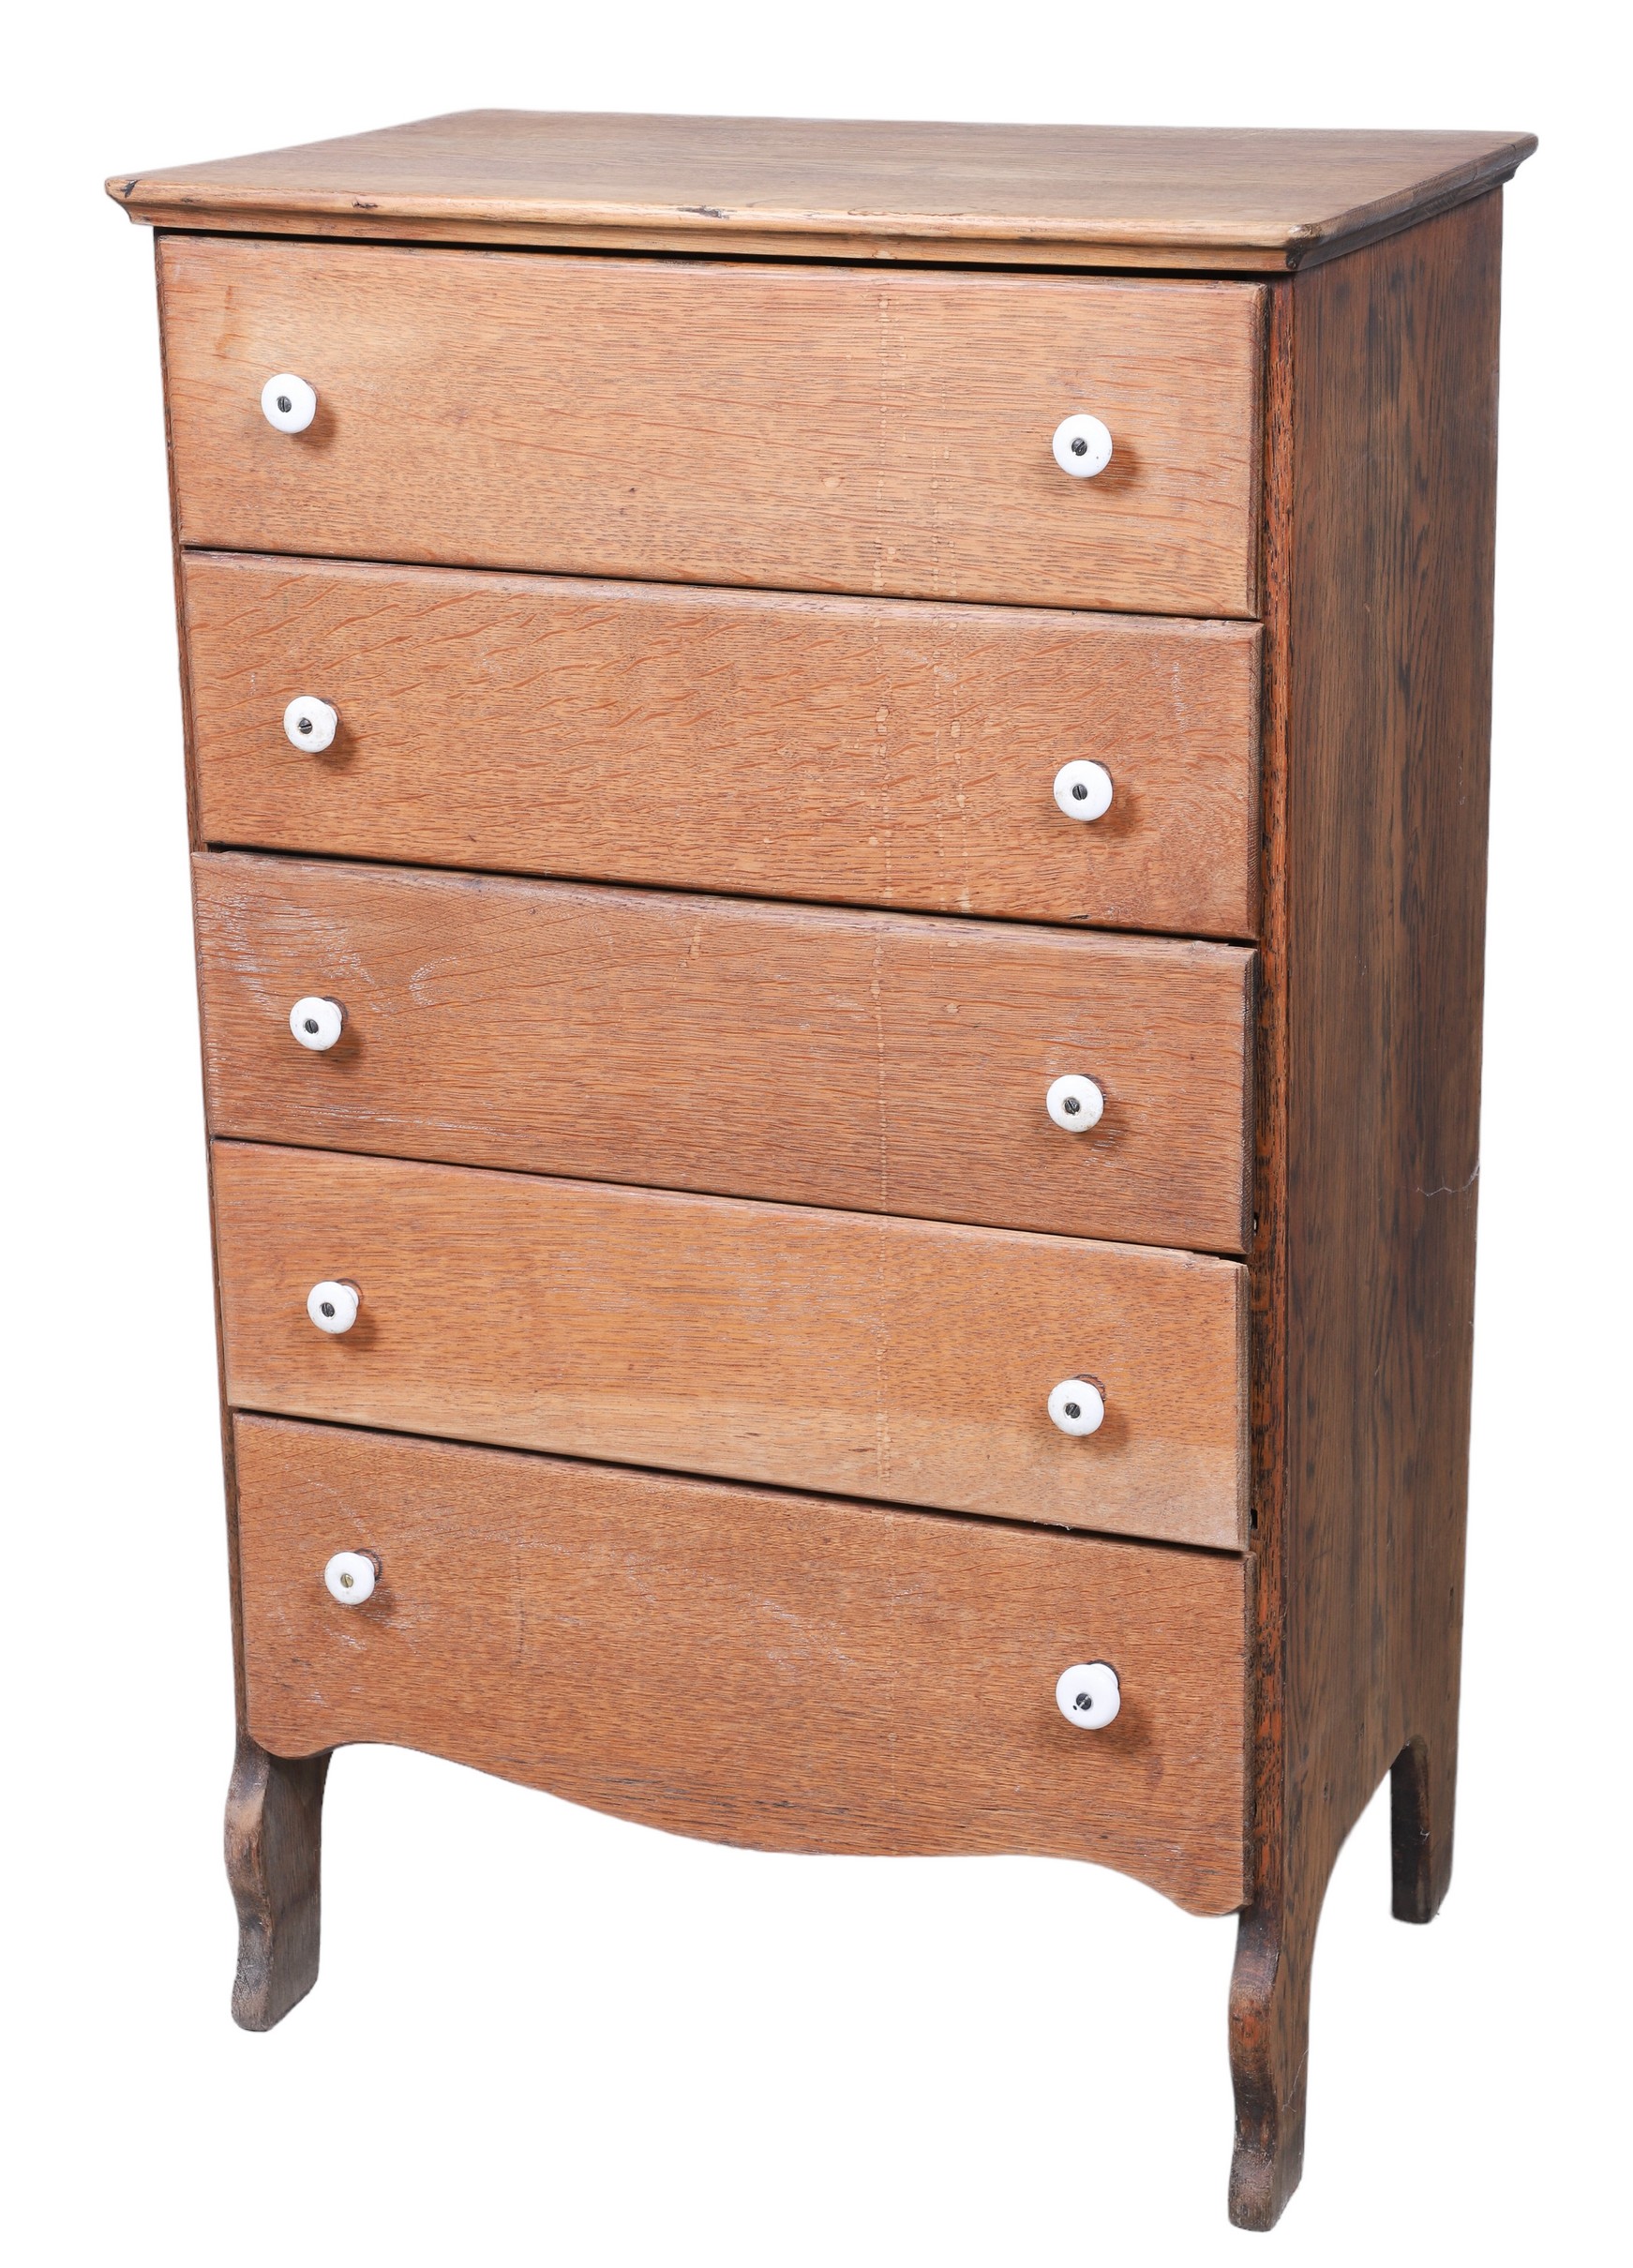 Oak 5 drawer chest, white enameled